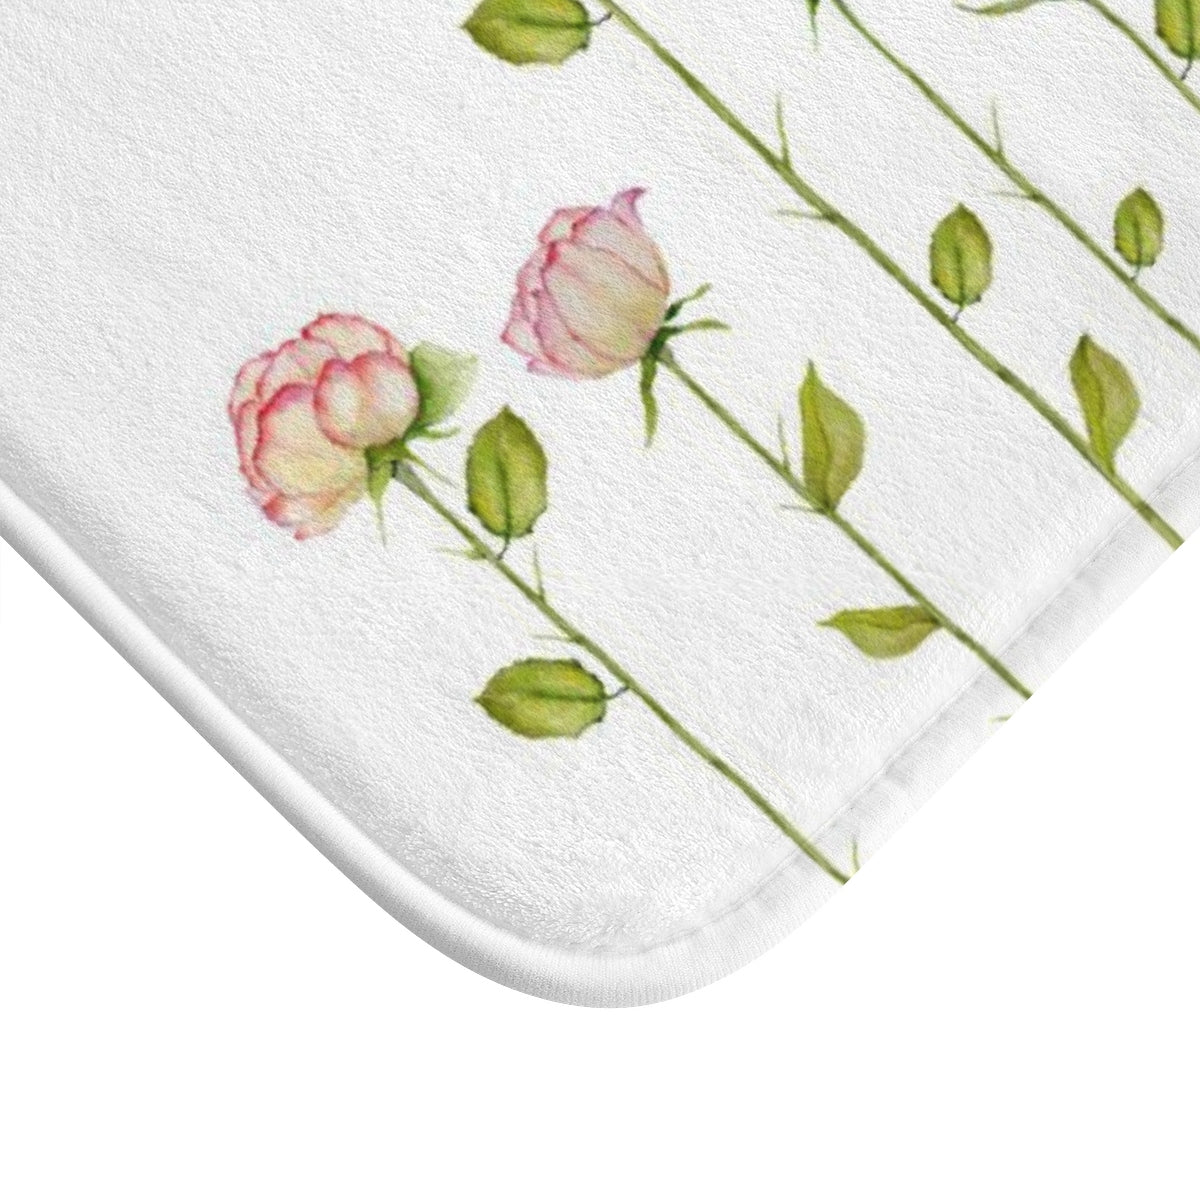 Rose Flower Bath Mat - Liz Kapiloto Art & Design